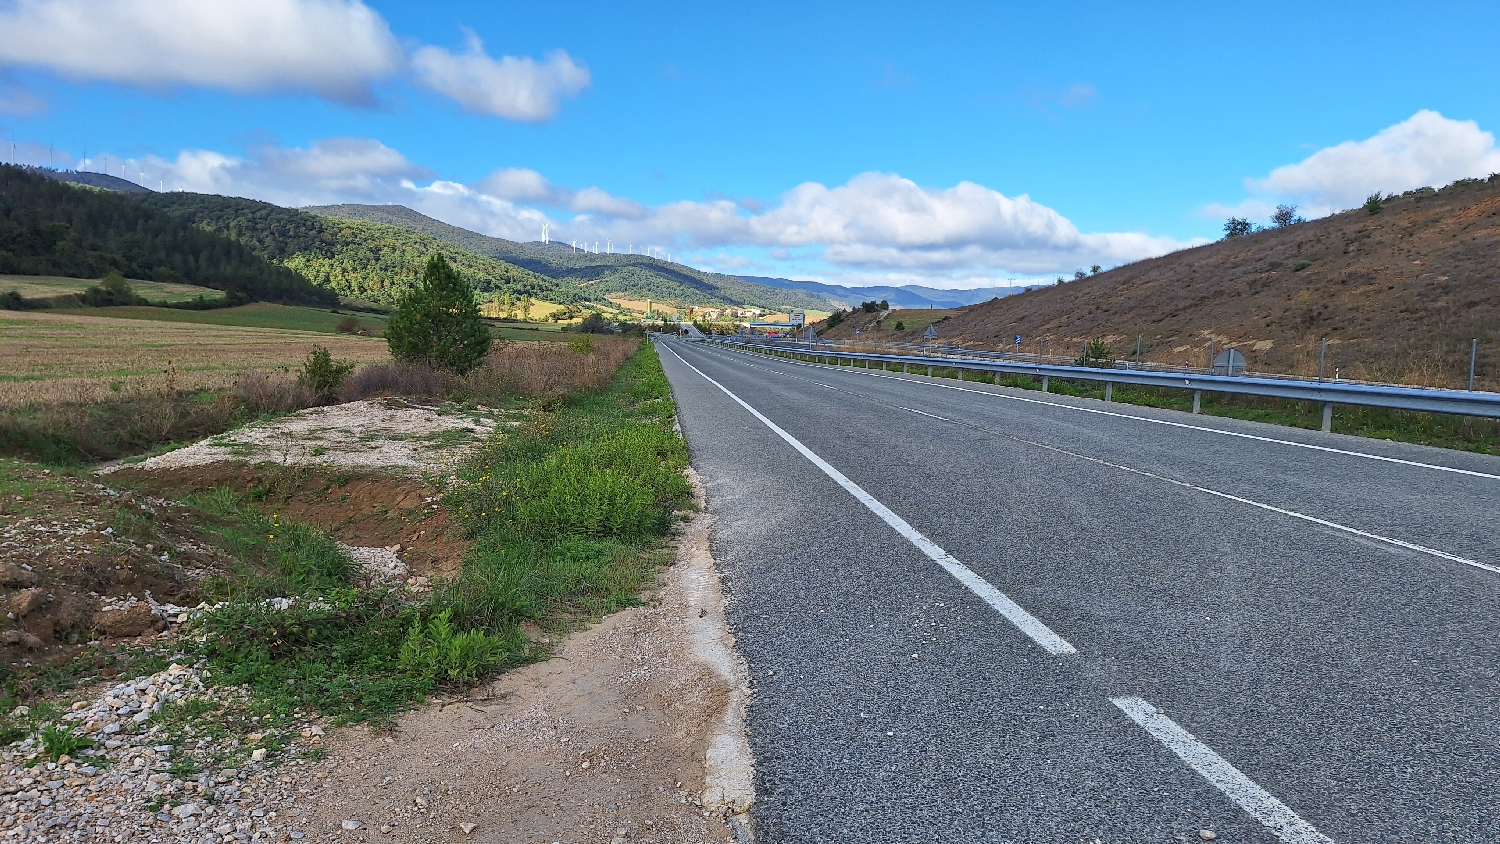 El Camino, Aragon út, majdnem másfél órán keresztül országút mellett kell gyalogolni